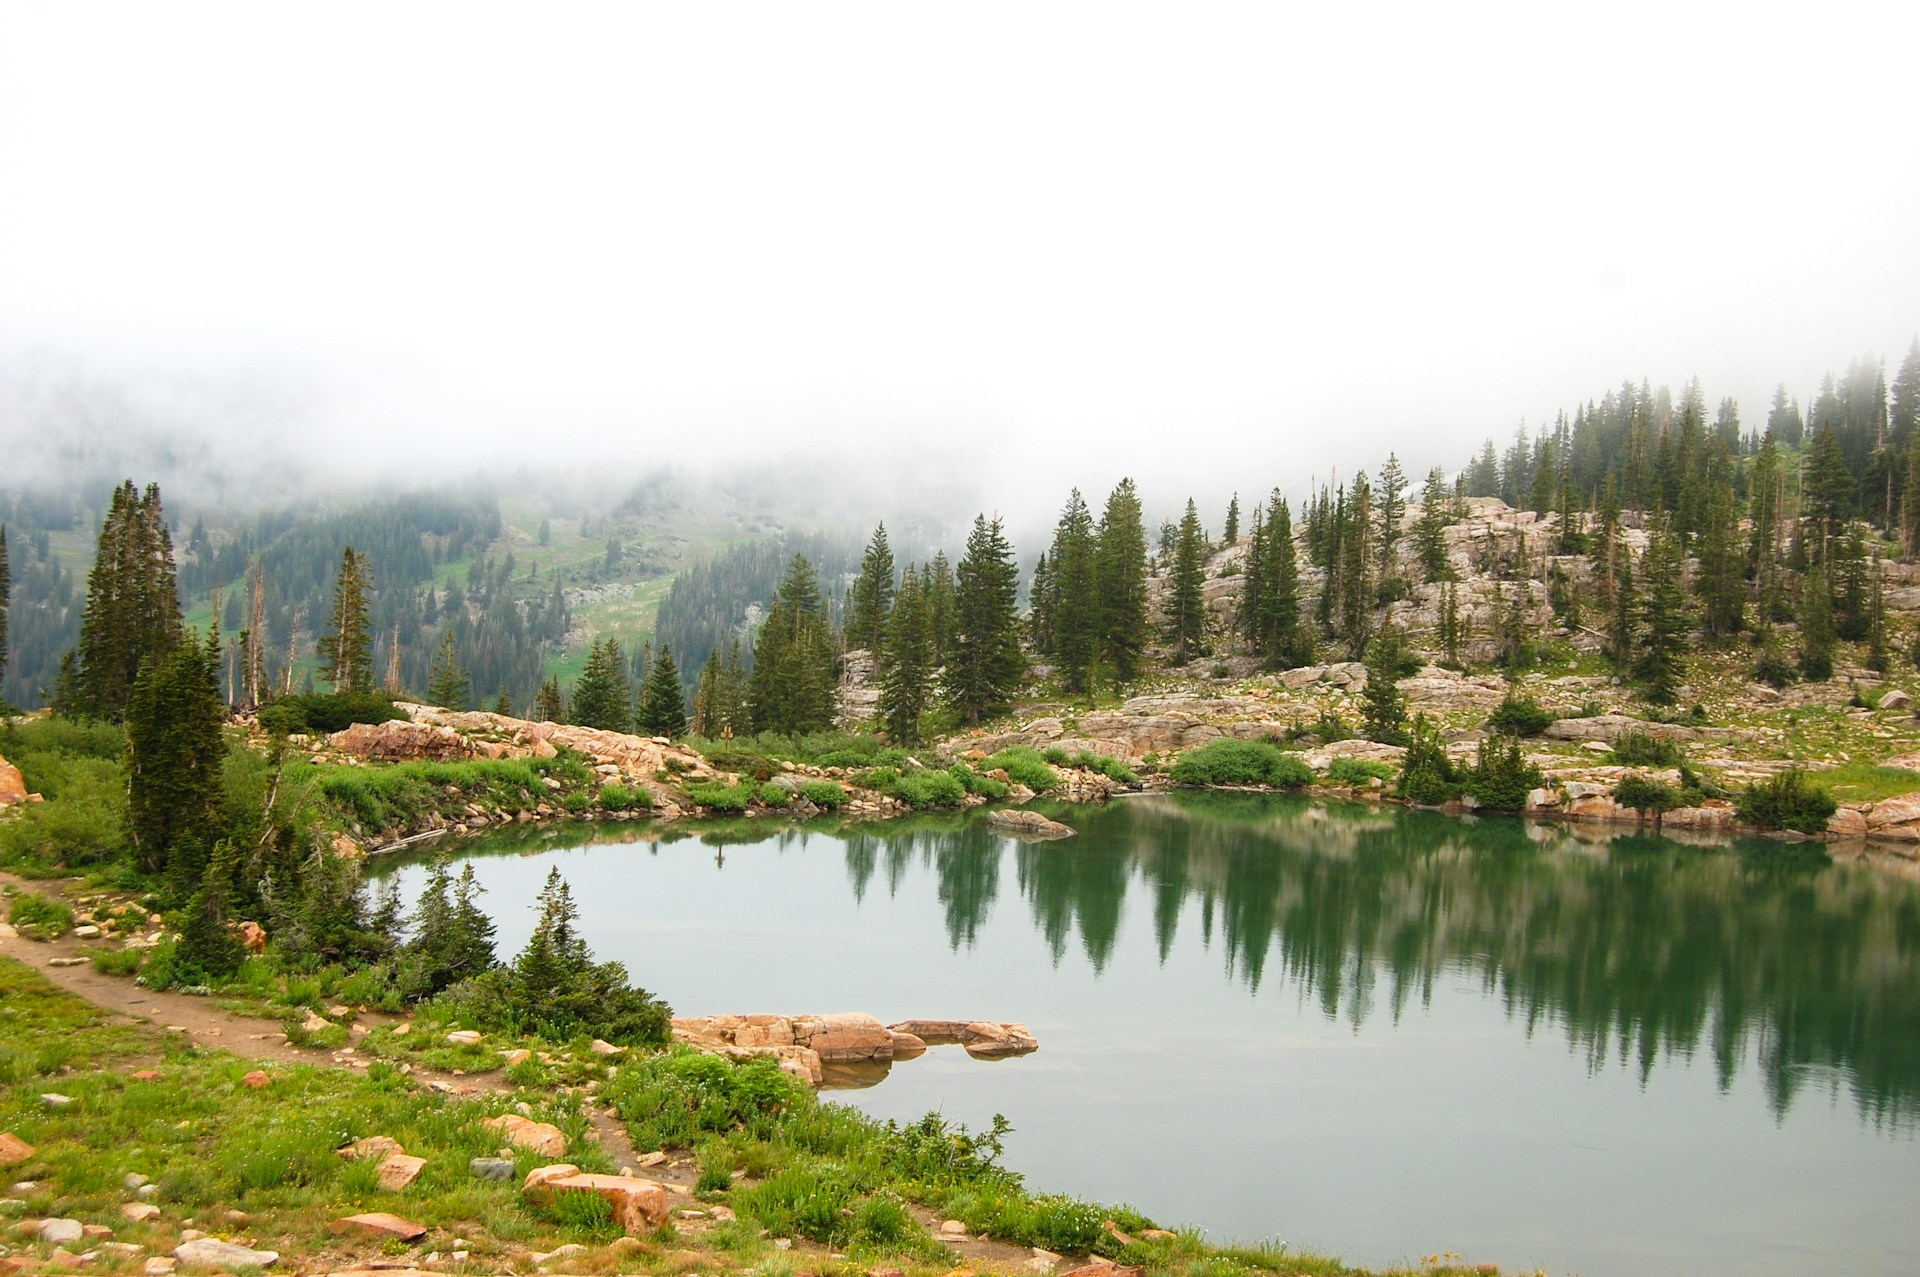 Cecret Lake, an off-the-beaten path Utah hidden gem
